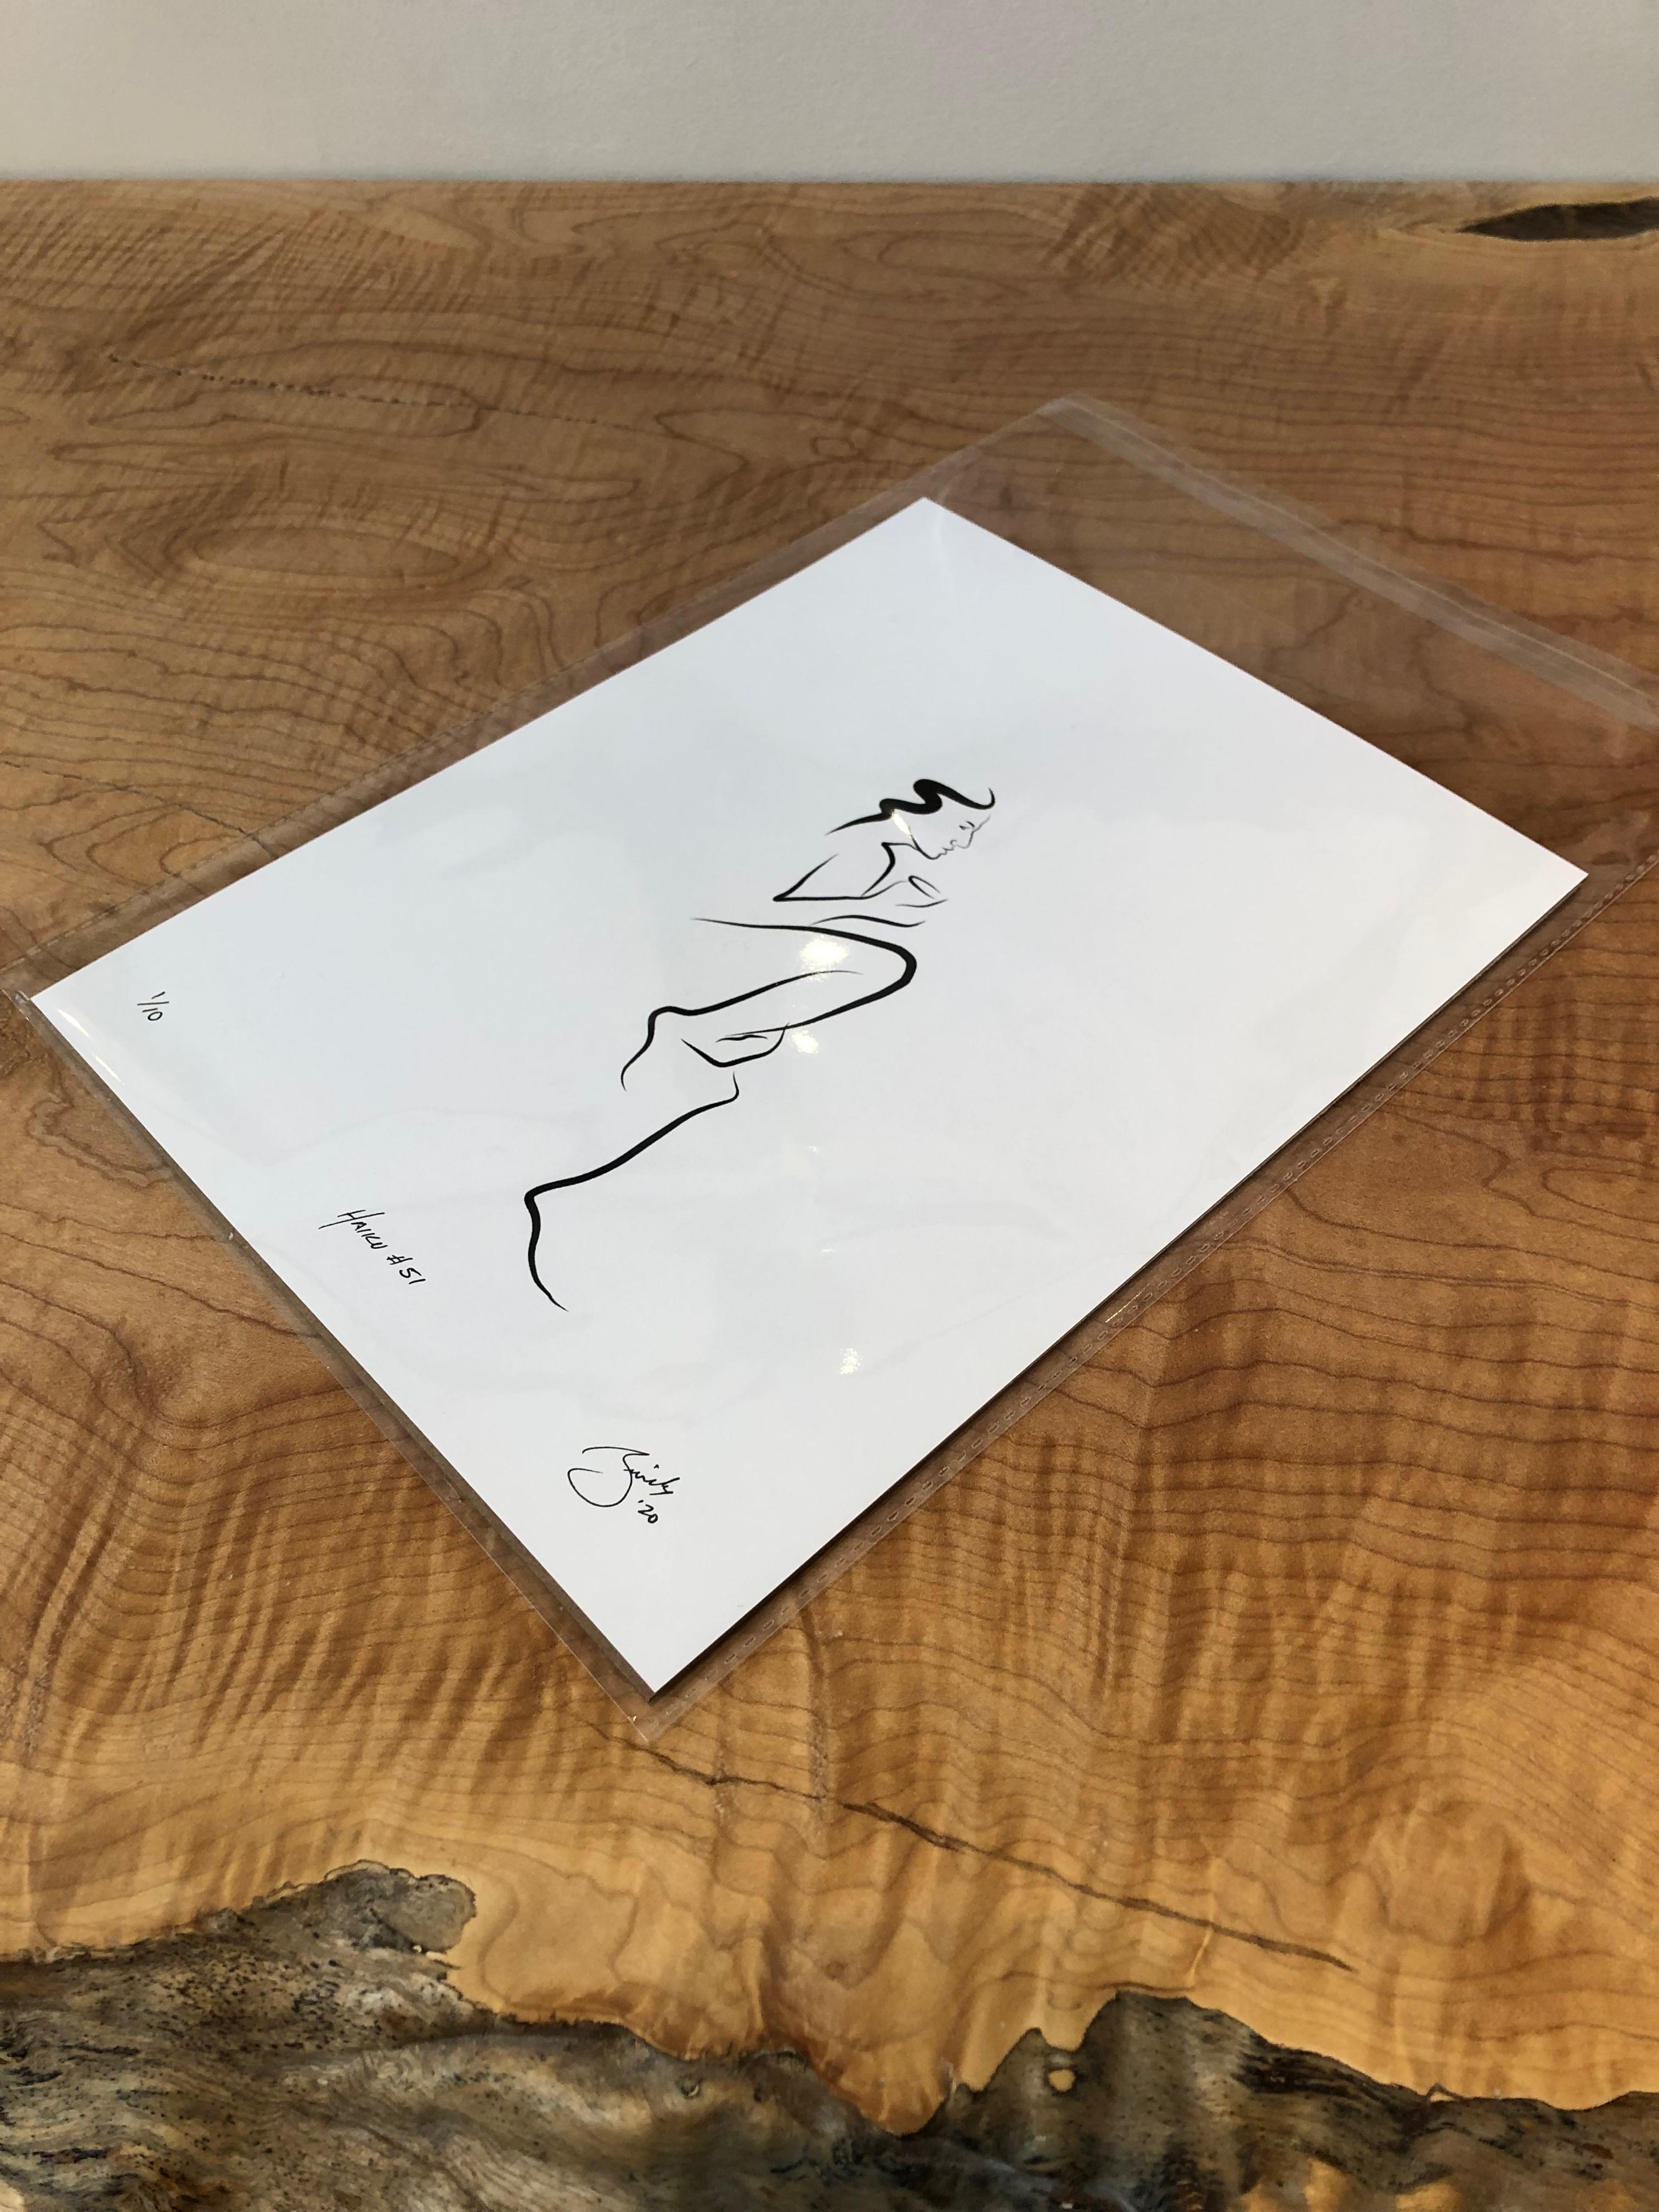 Haiku #51, 1/50 - Digital Vector Drawing Seated Female Nude Figure Sip Coffee - Print by Michael Binkley